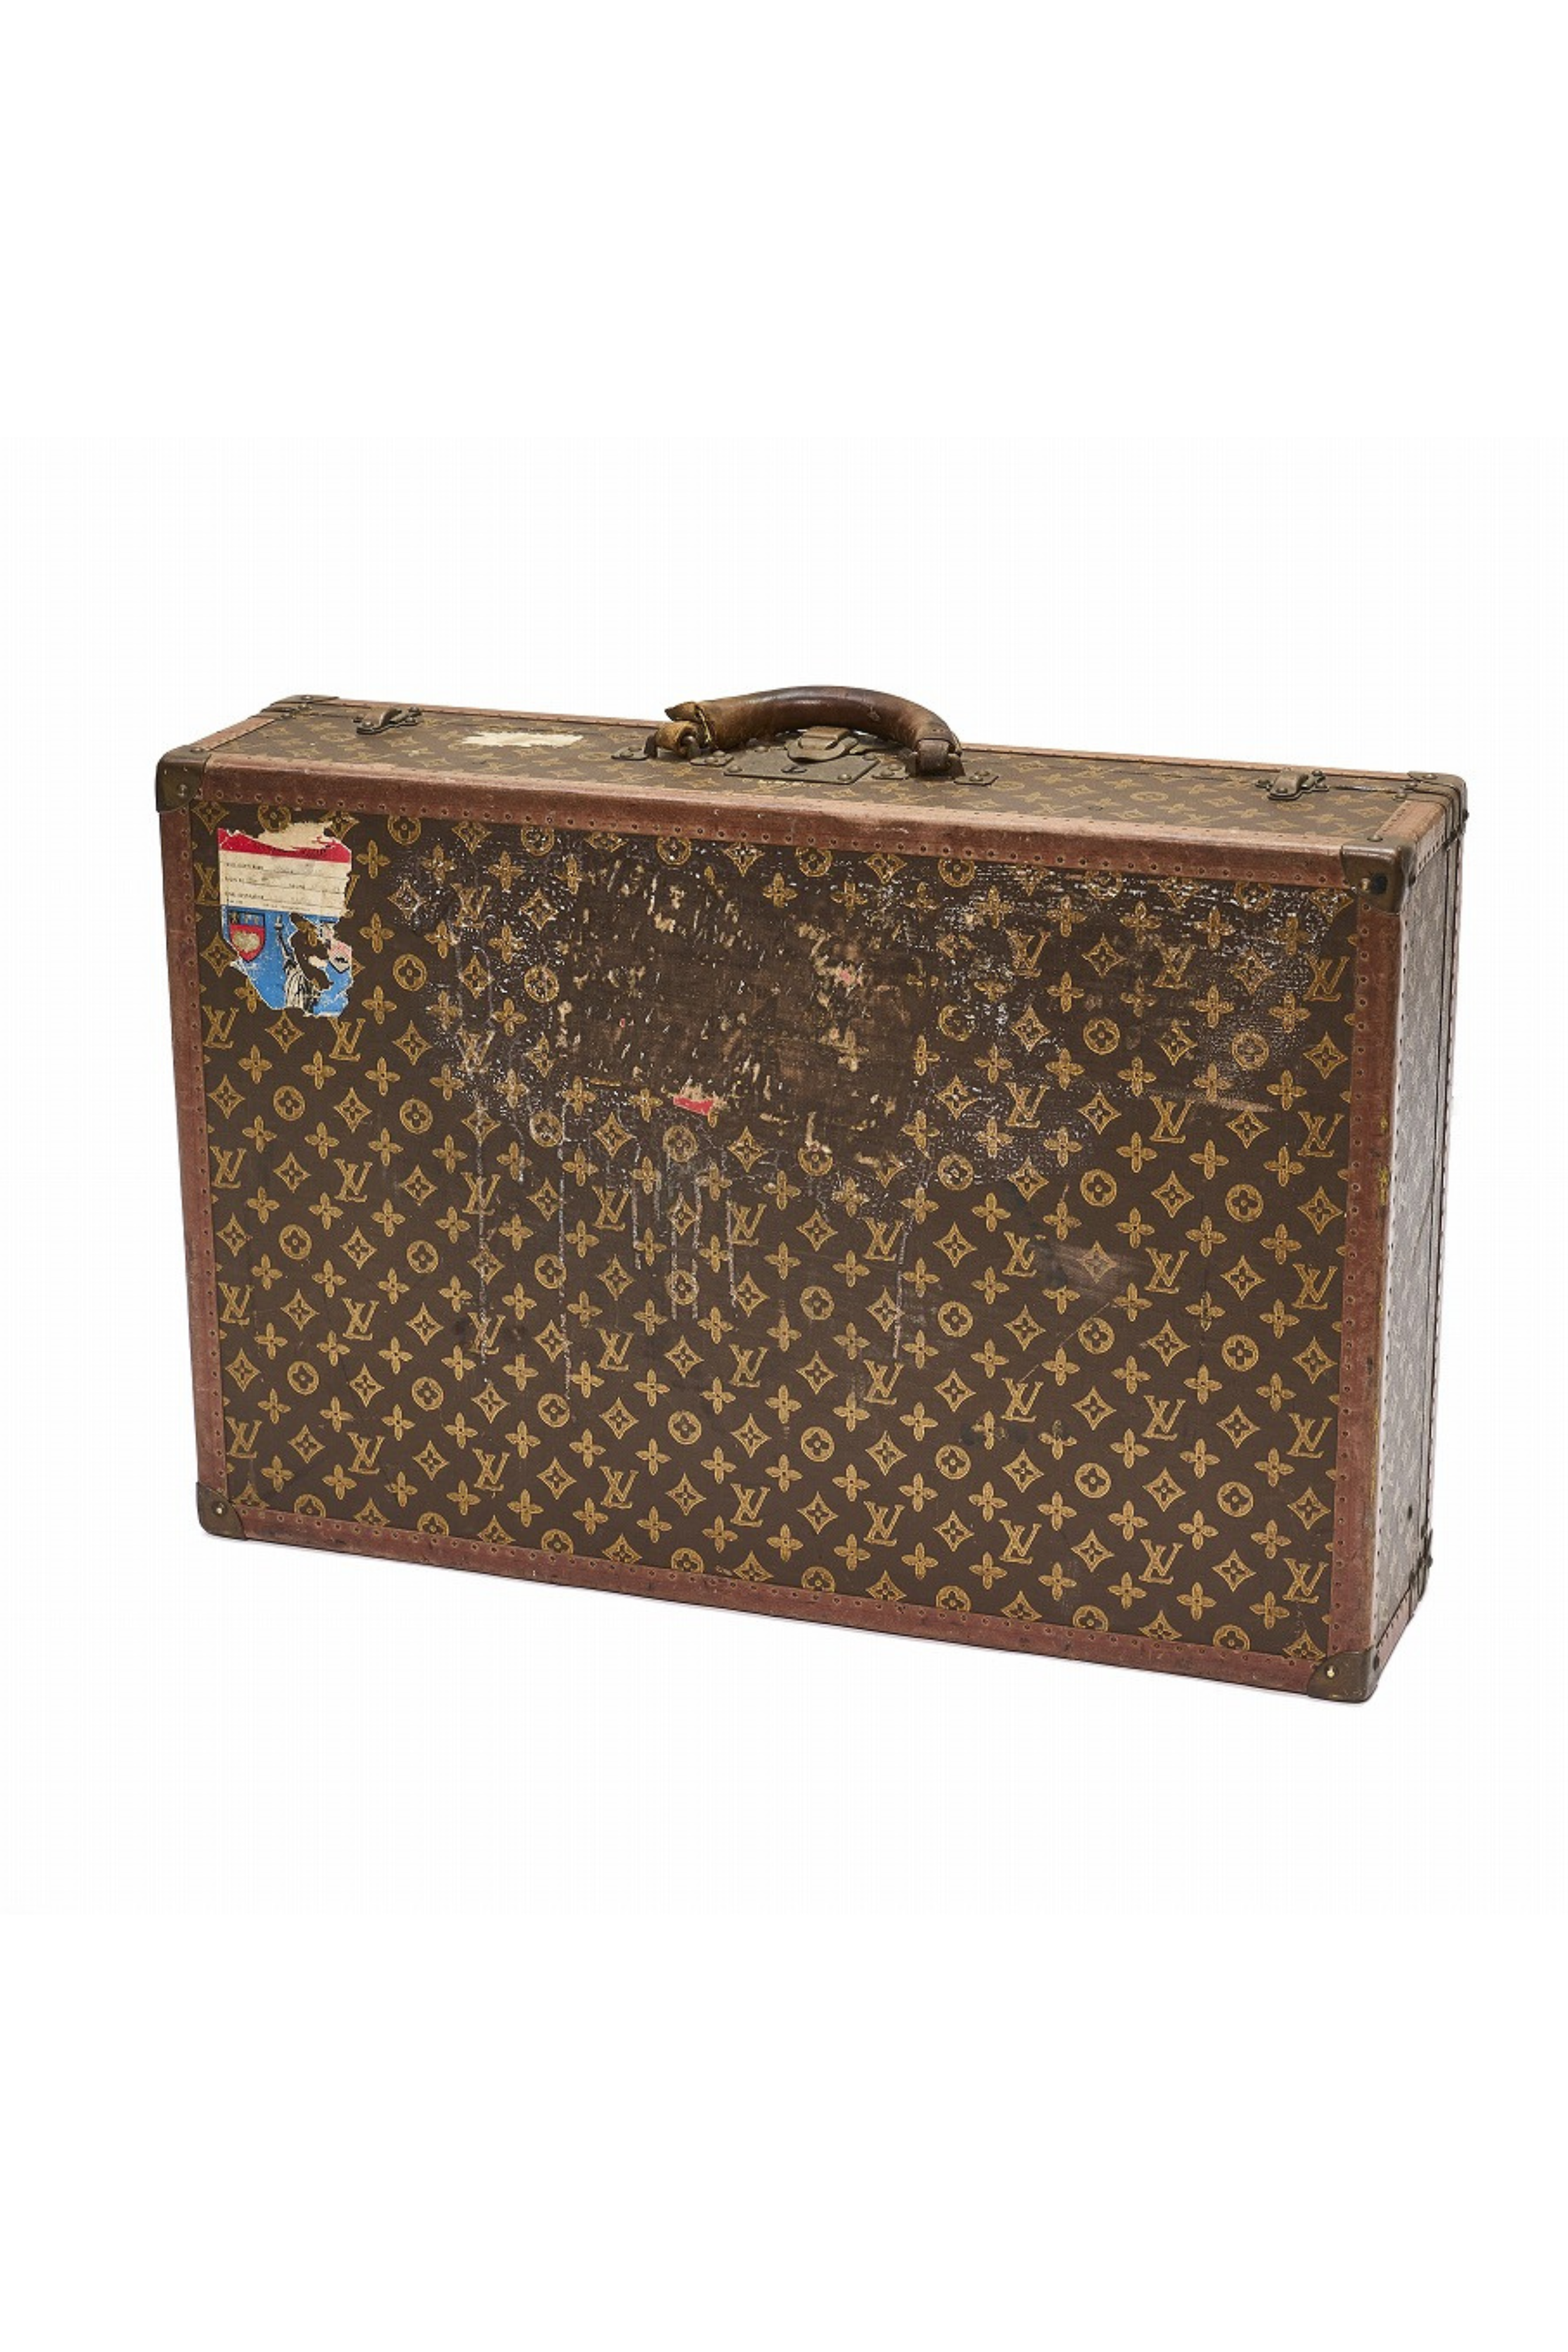 1950s Louis Vuitton（ルイ・ヴィトン）モノグラム・キャンバス スーツケース